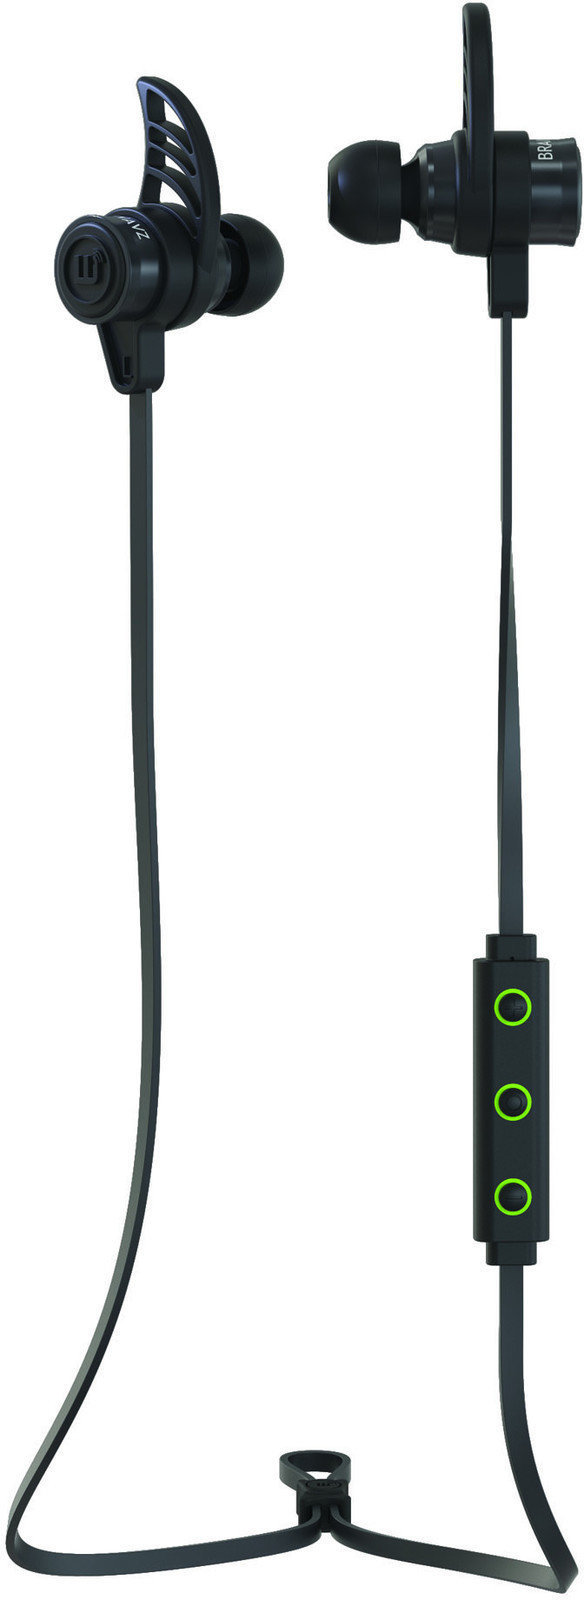 In-ear draadloze koptelefoon Brainwavz BLU-200 Bluetooth 4.0 aptX In-Ear Earphones Black